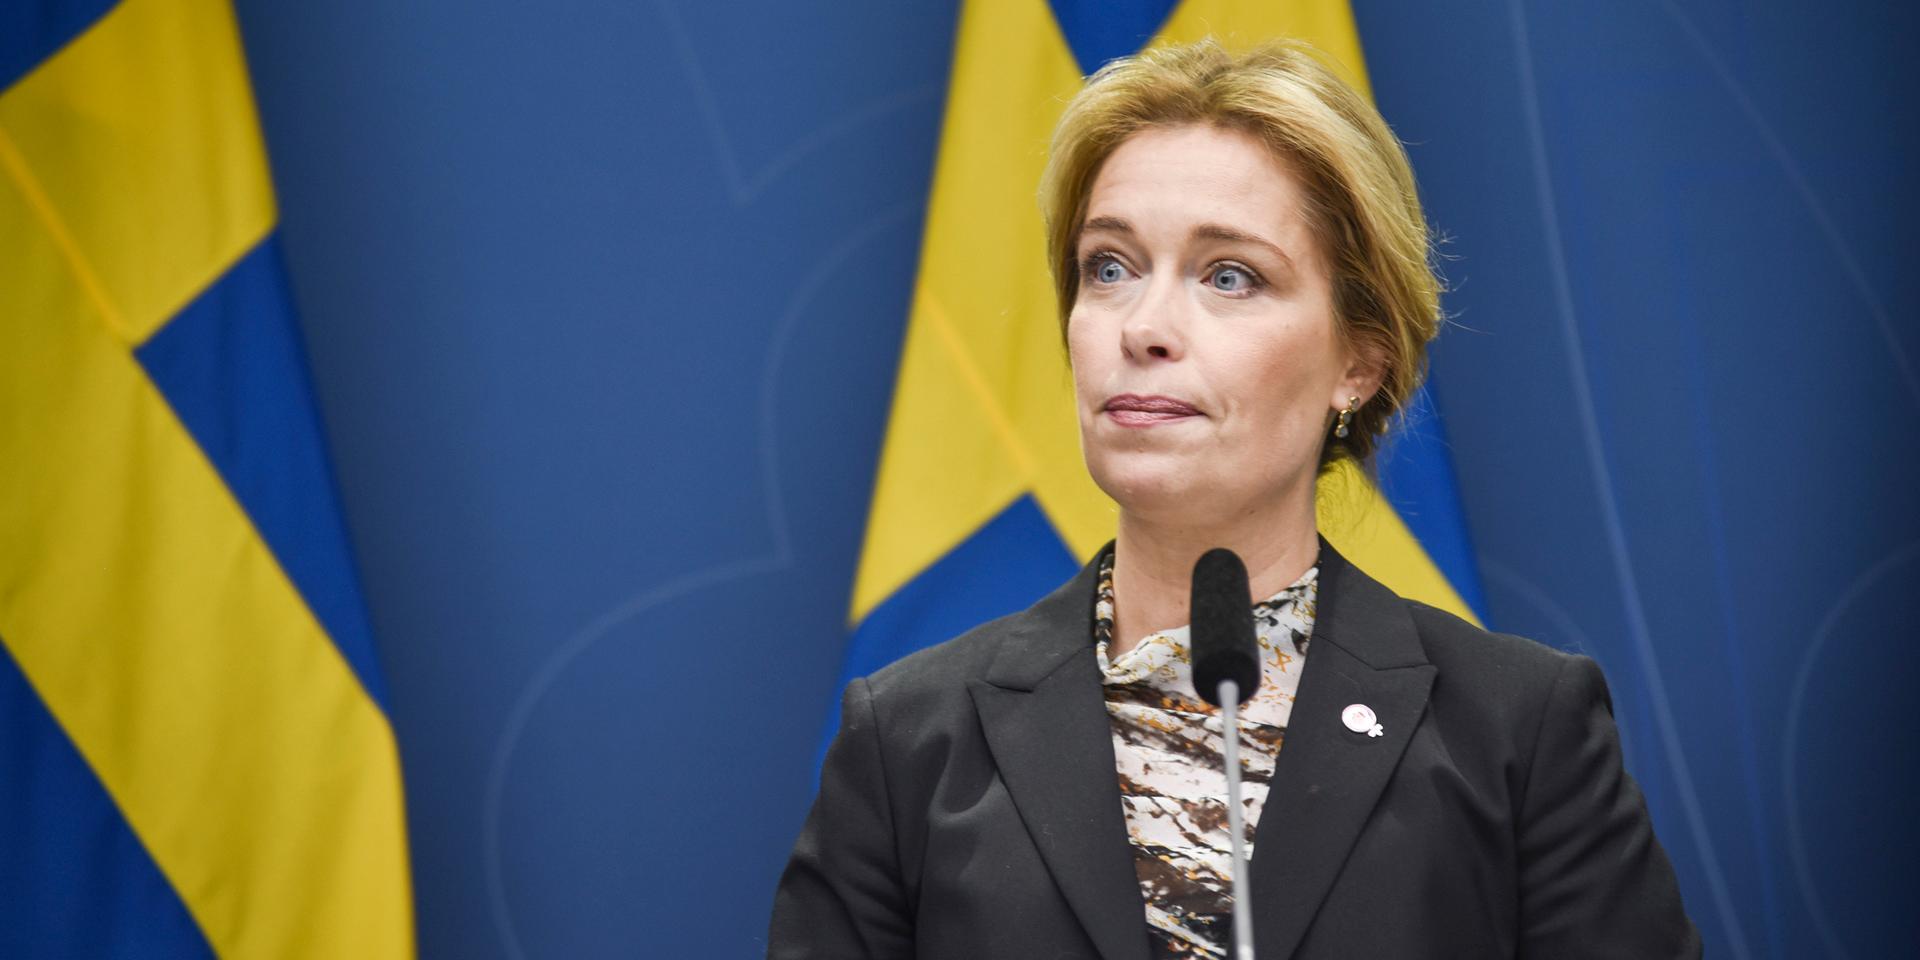 Klimat- och miljöminister Annika Strandhäll under en pressträff om regeringens arbete med frågan om slutförvar av använt kärnbränsle och radioaktivt avfall.